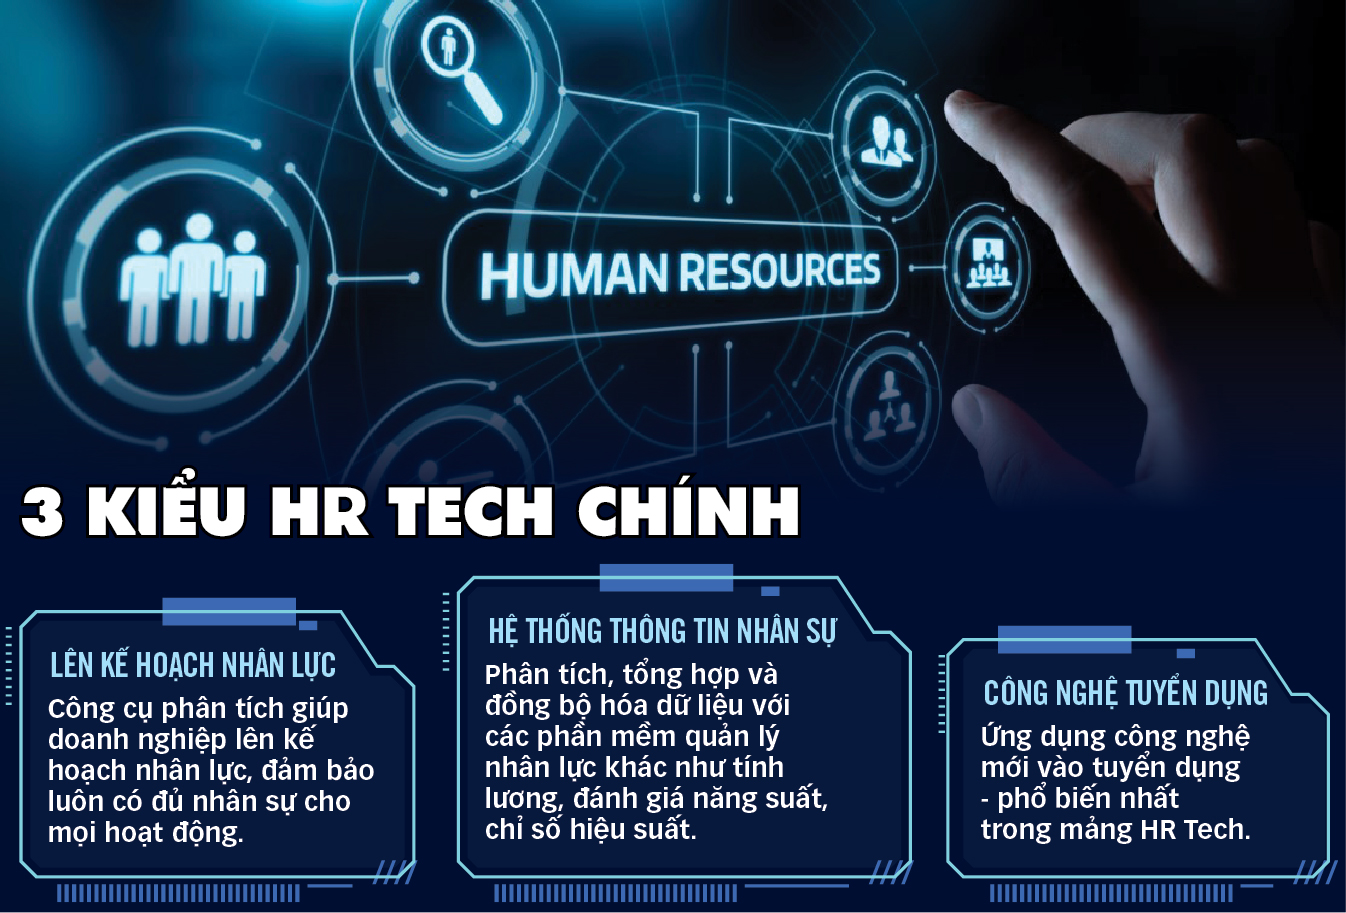 HR Tech nổi lên ở Việt Nam - Ảnh 1.